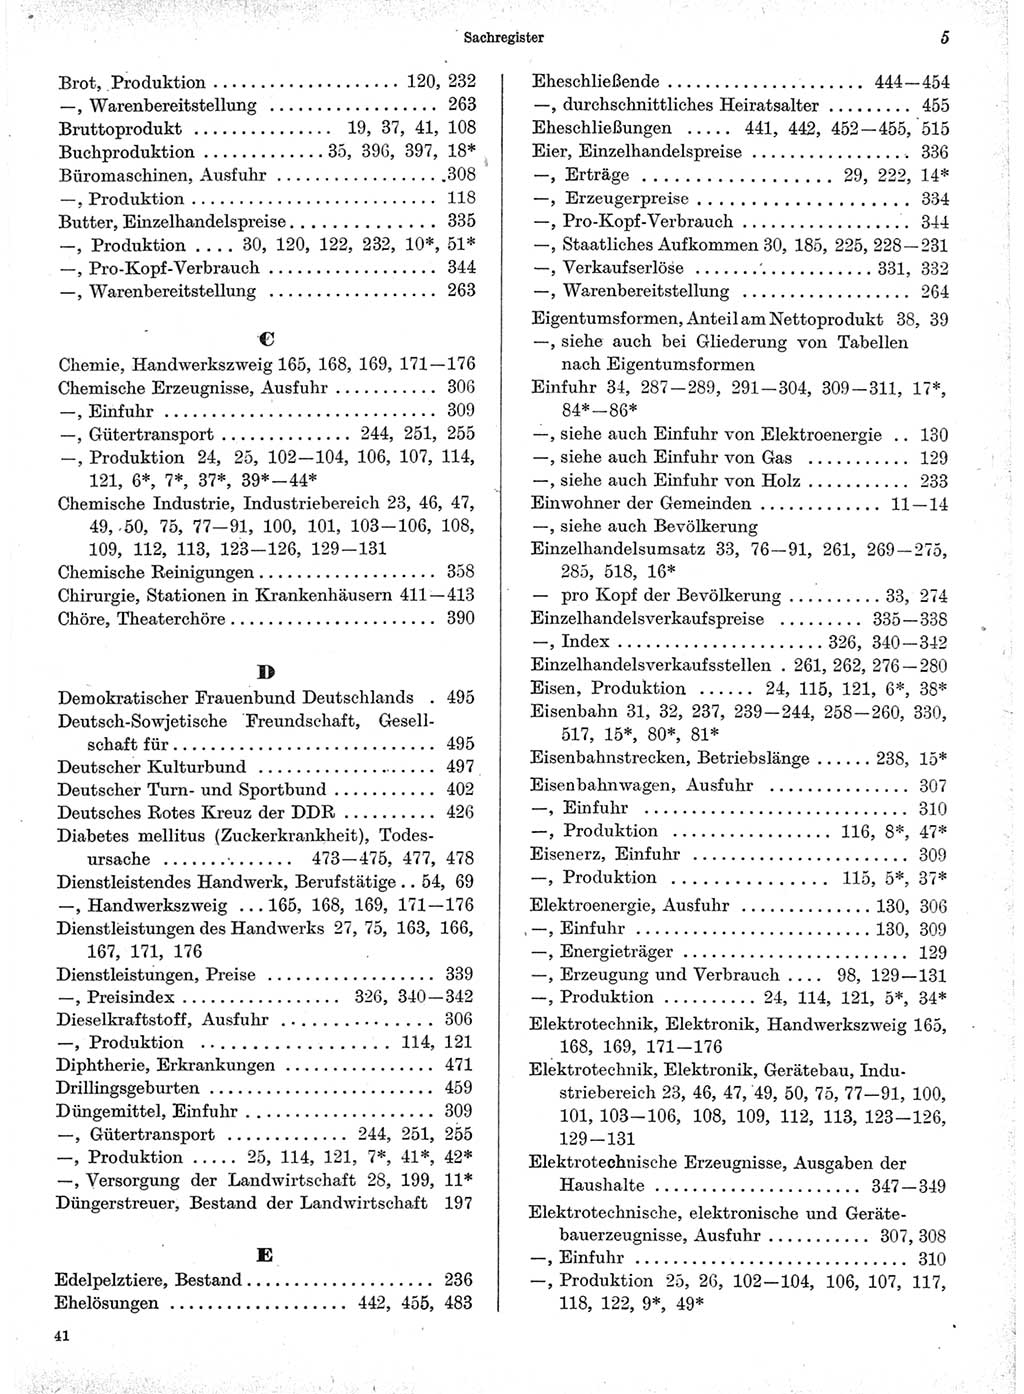 Statistisches Jahrbuch der Deutschen Demokratischen Republik (DDR) 1971, Seite 5 (Stat. Jb. DDR 1971, S. 5)